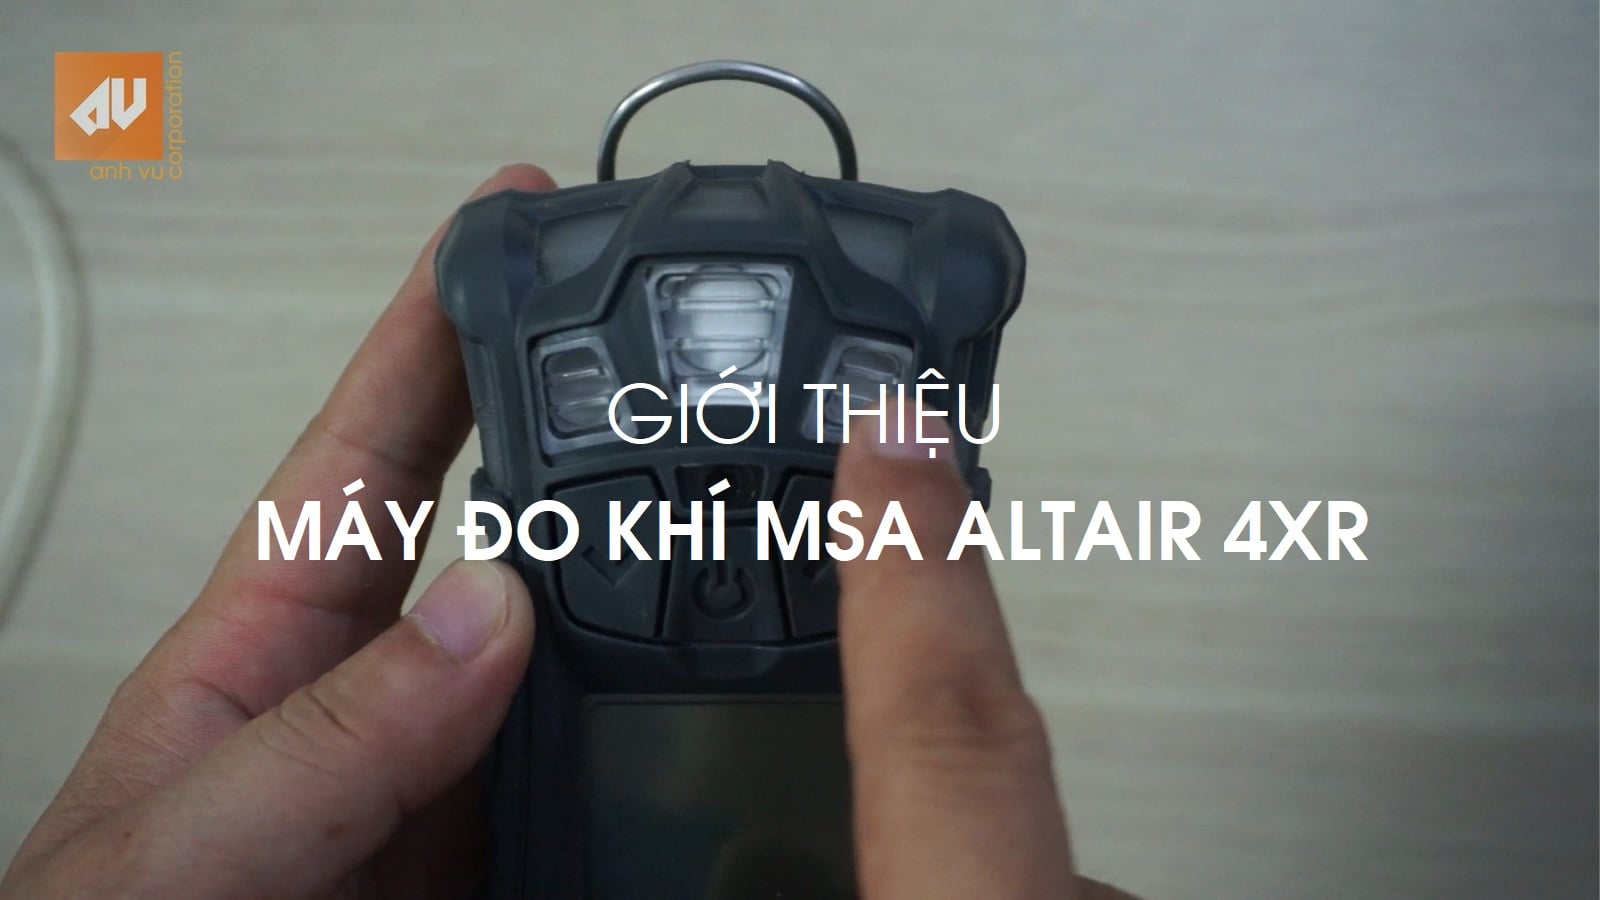 Máy đo khí MSA Altair 4XR: Video 1 – Giới thiệu